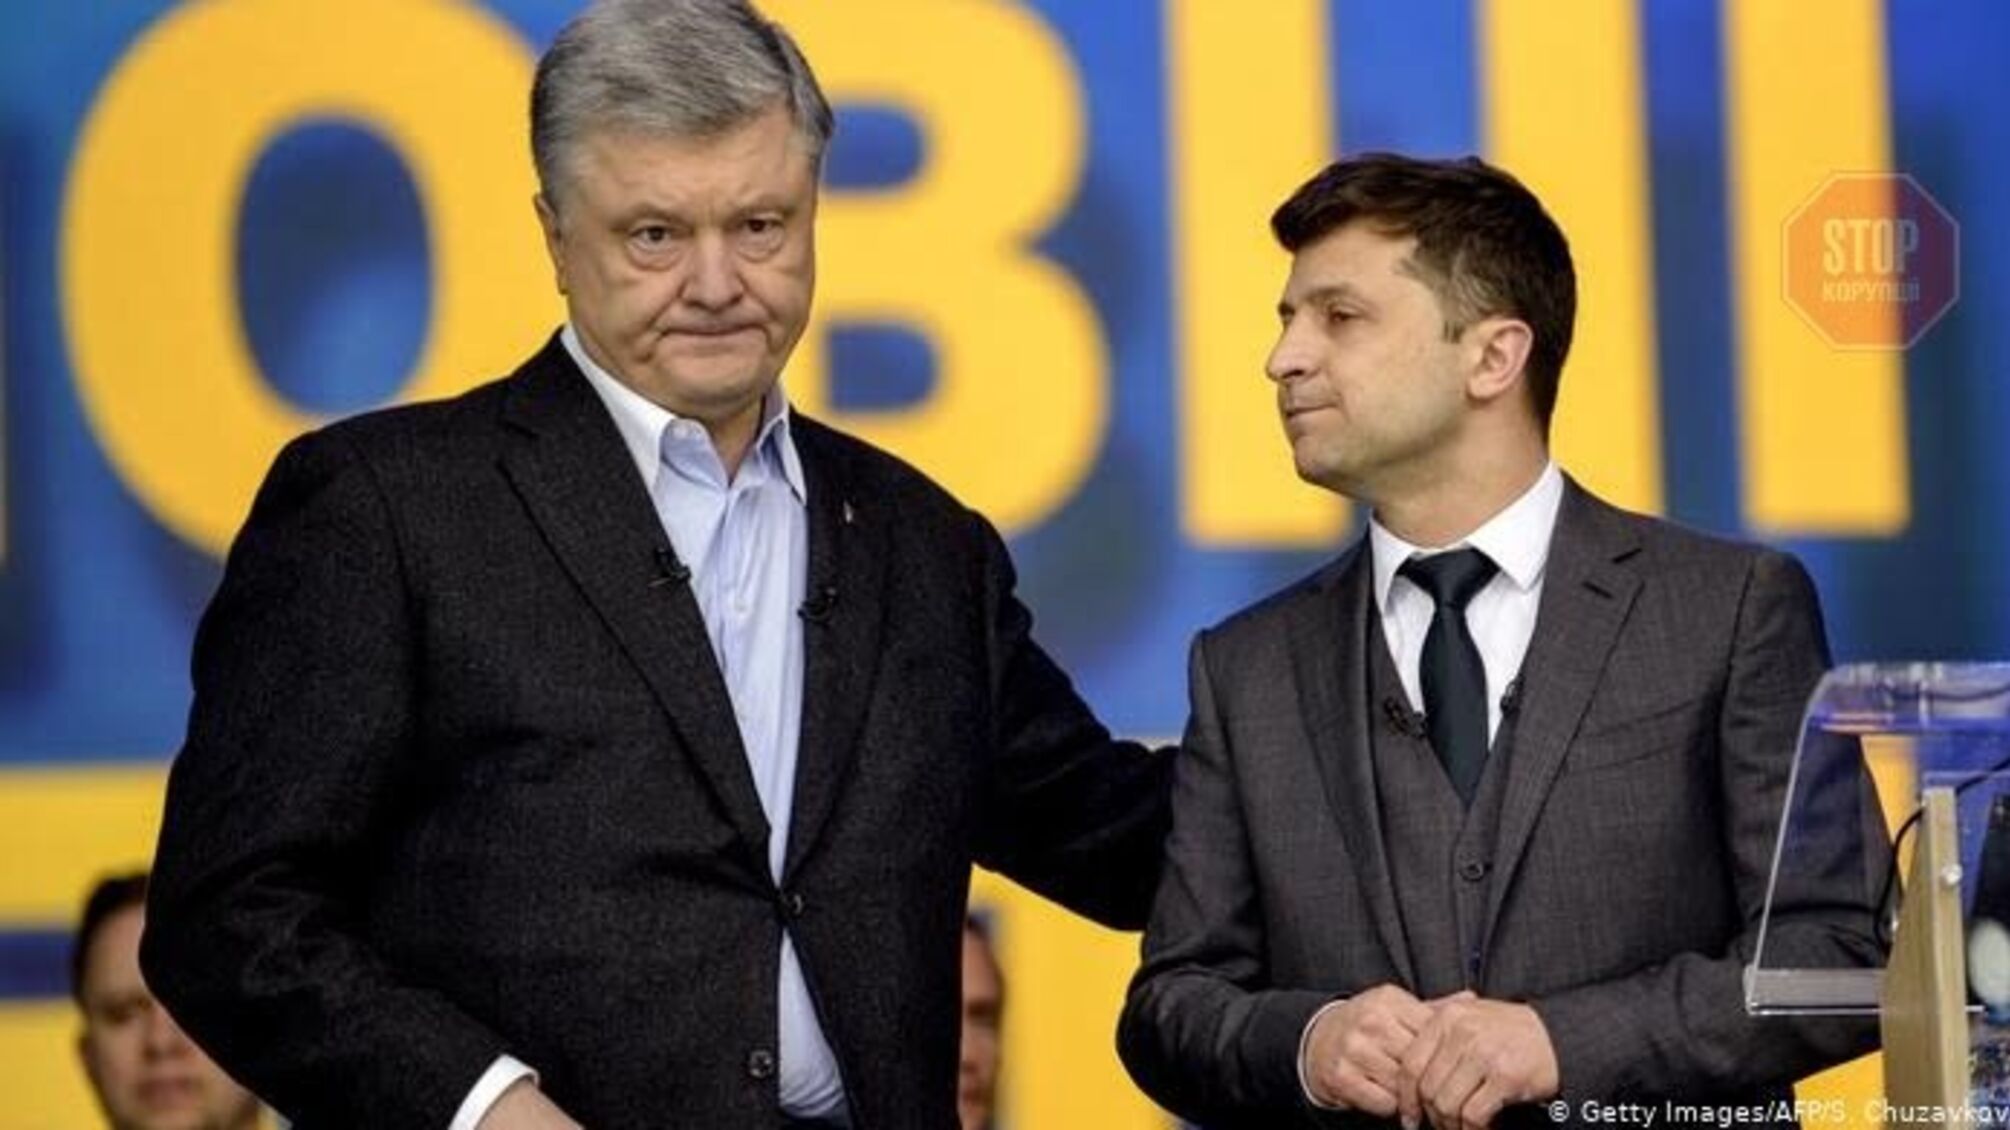 'ЕС': Законопроект об олигархах направлен лично против Порошенко